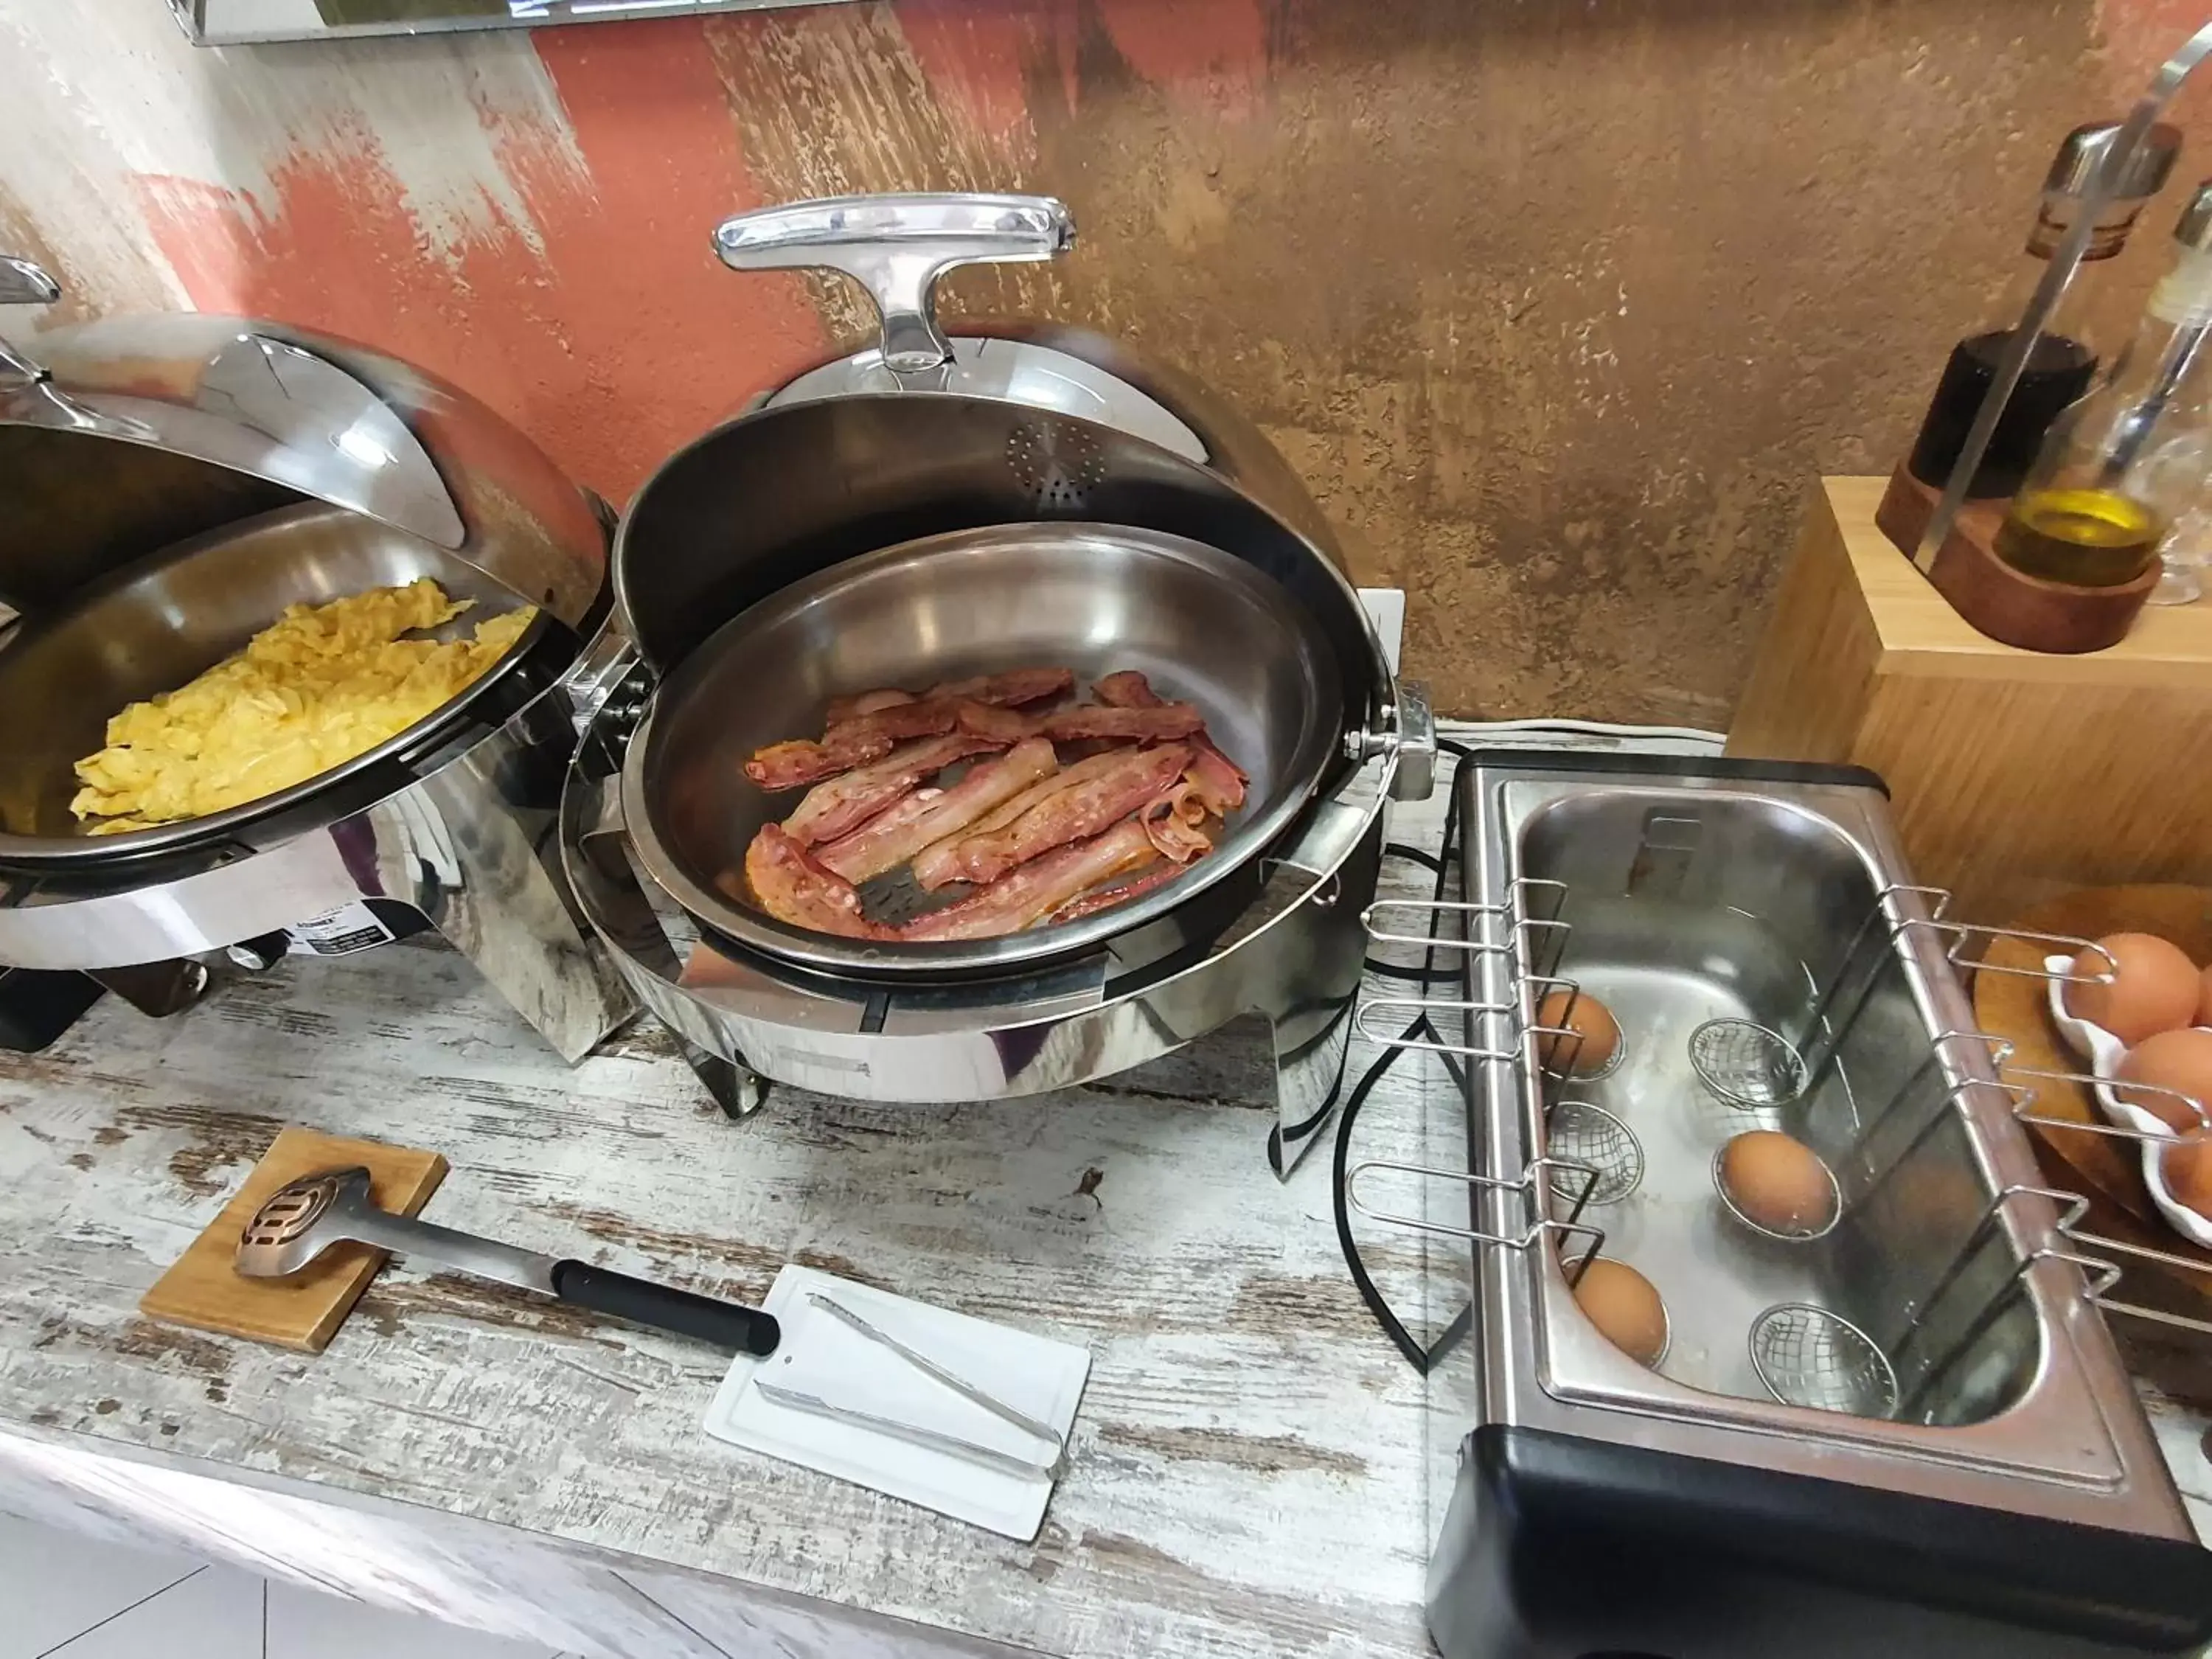 Buffet breakfast in Le Mariana